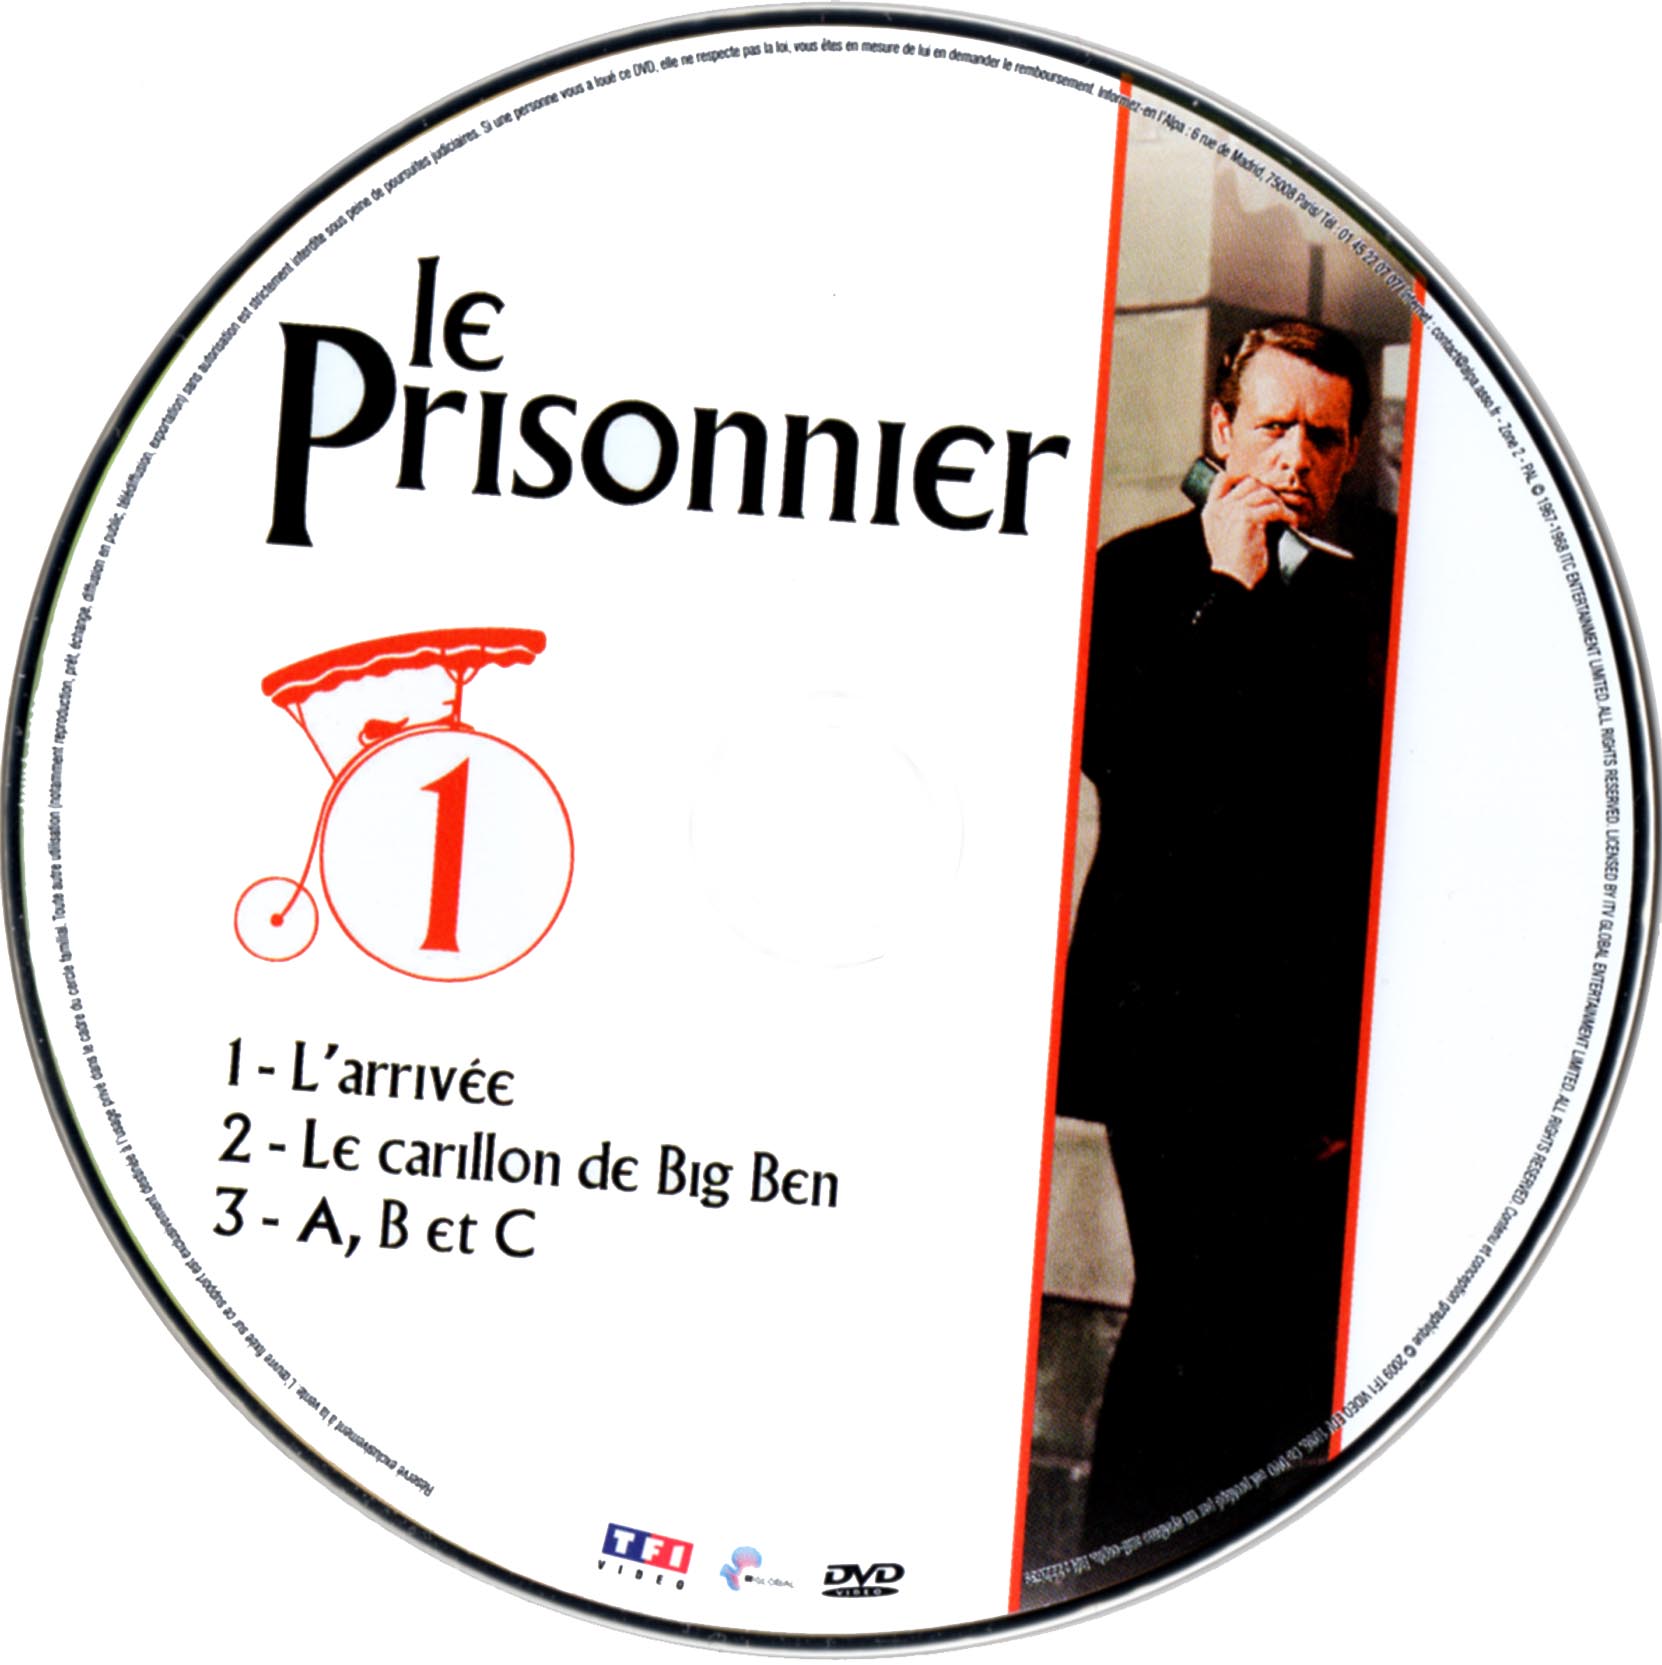 Le prisonnier DISC 1